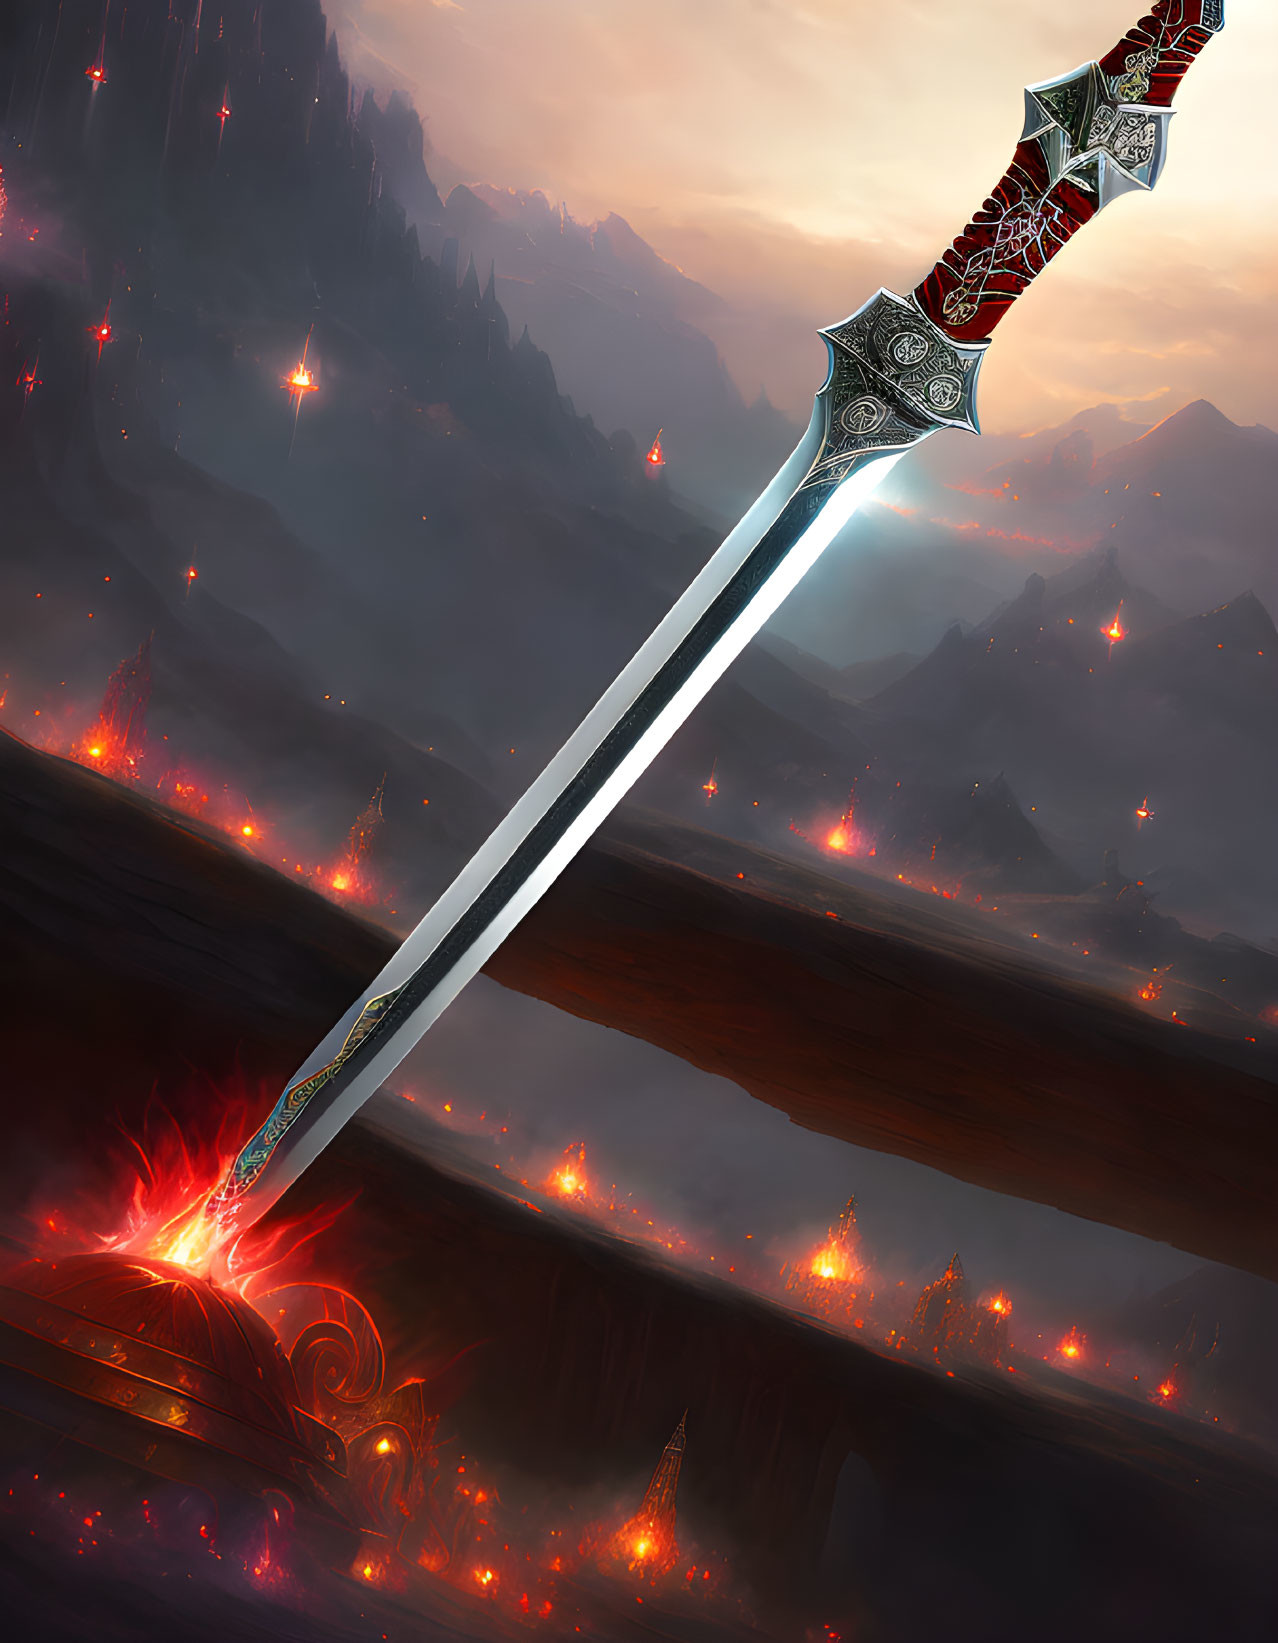 Intricate sword in stone amidst fiery landscape